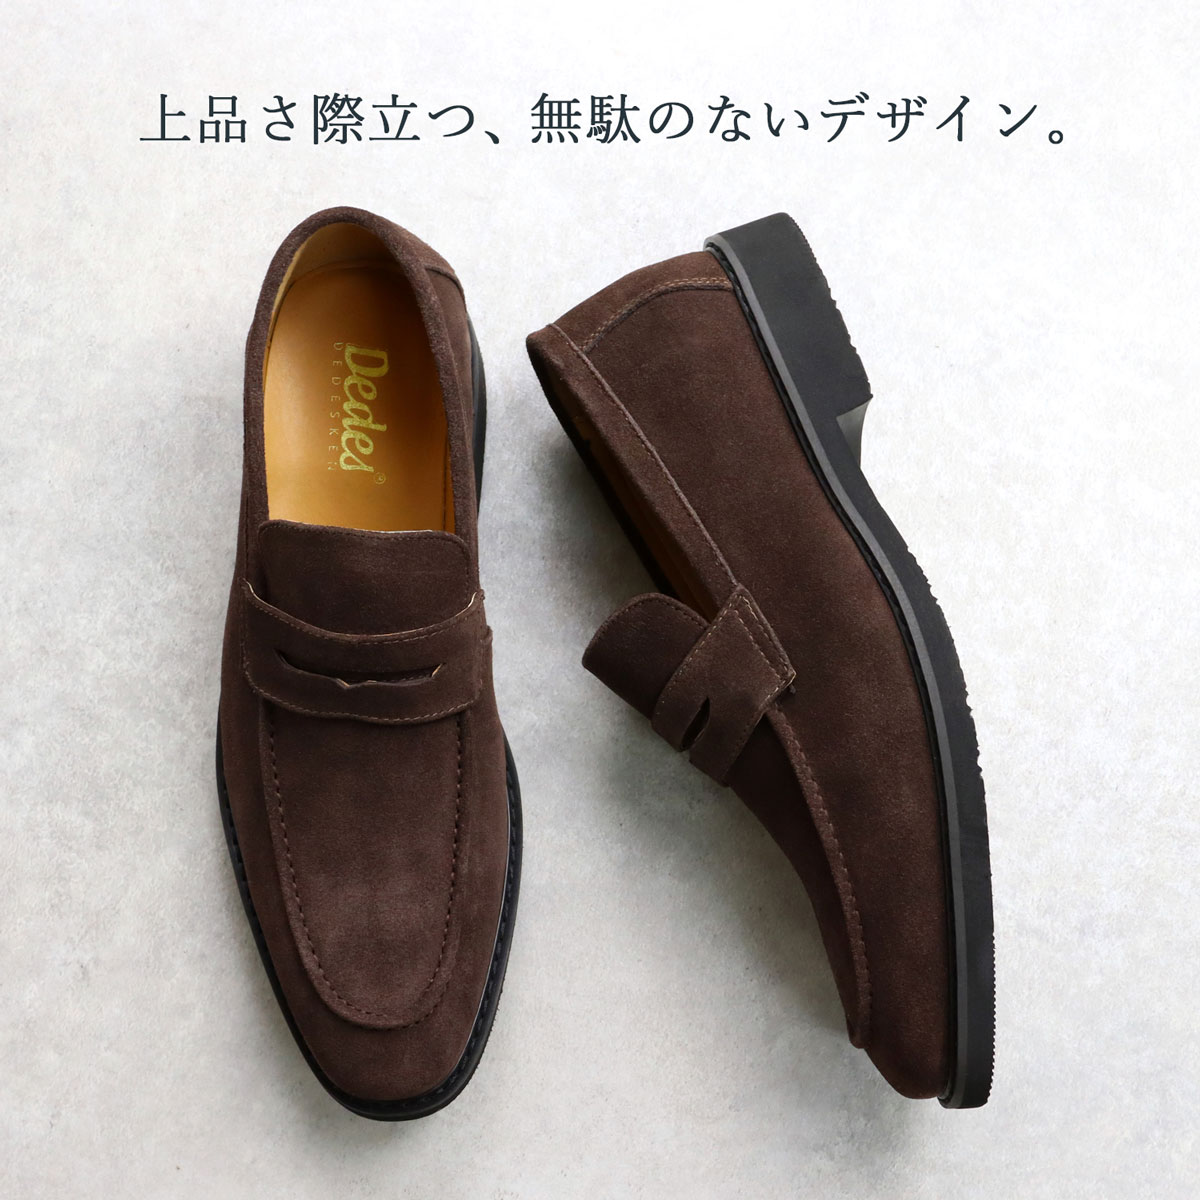 ローファー メンズ 本革 日本製 黒 コイン 革靴 ビジネス カジュアル